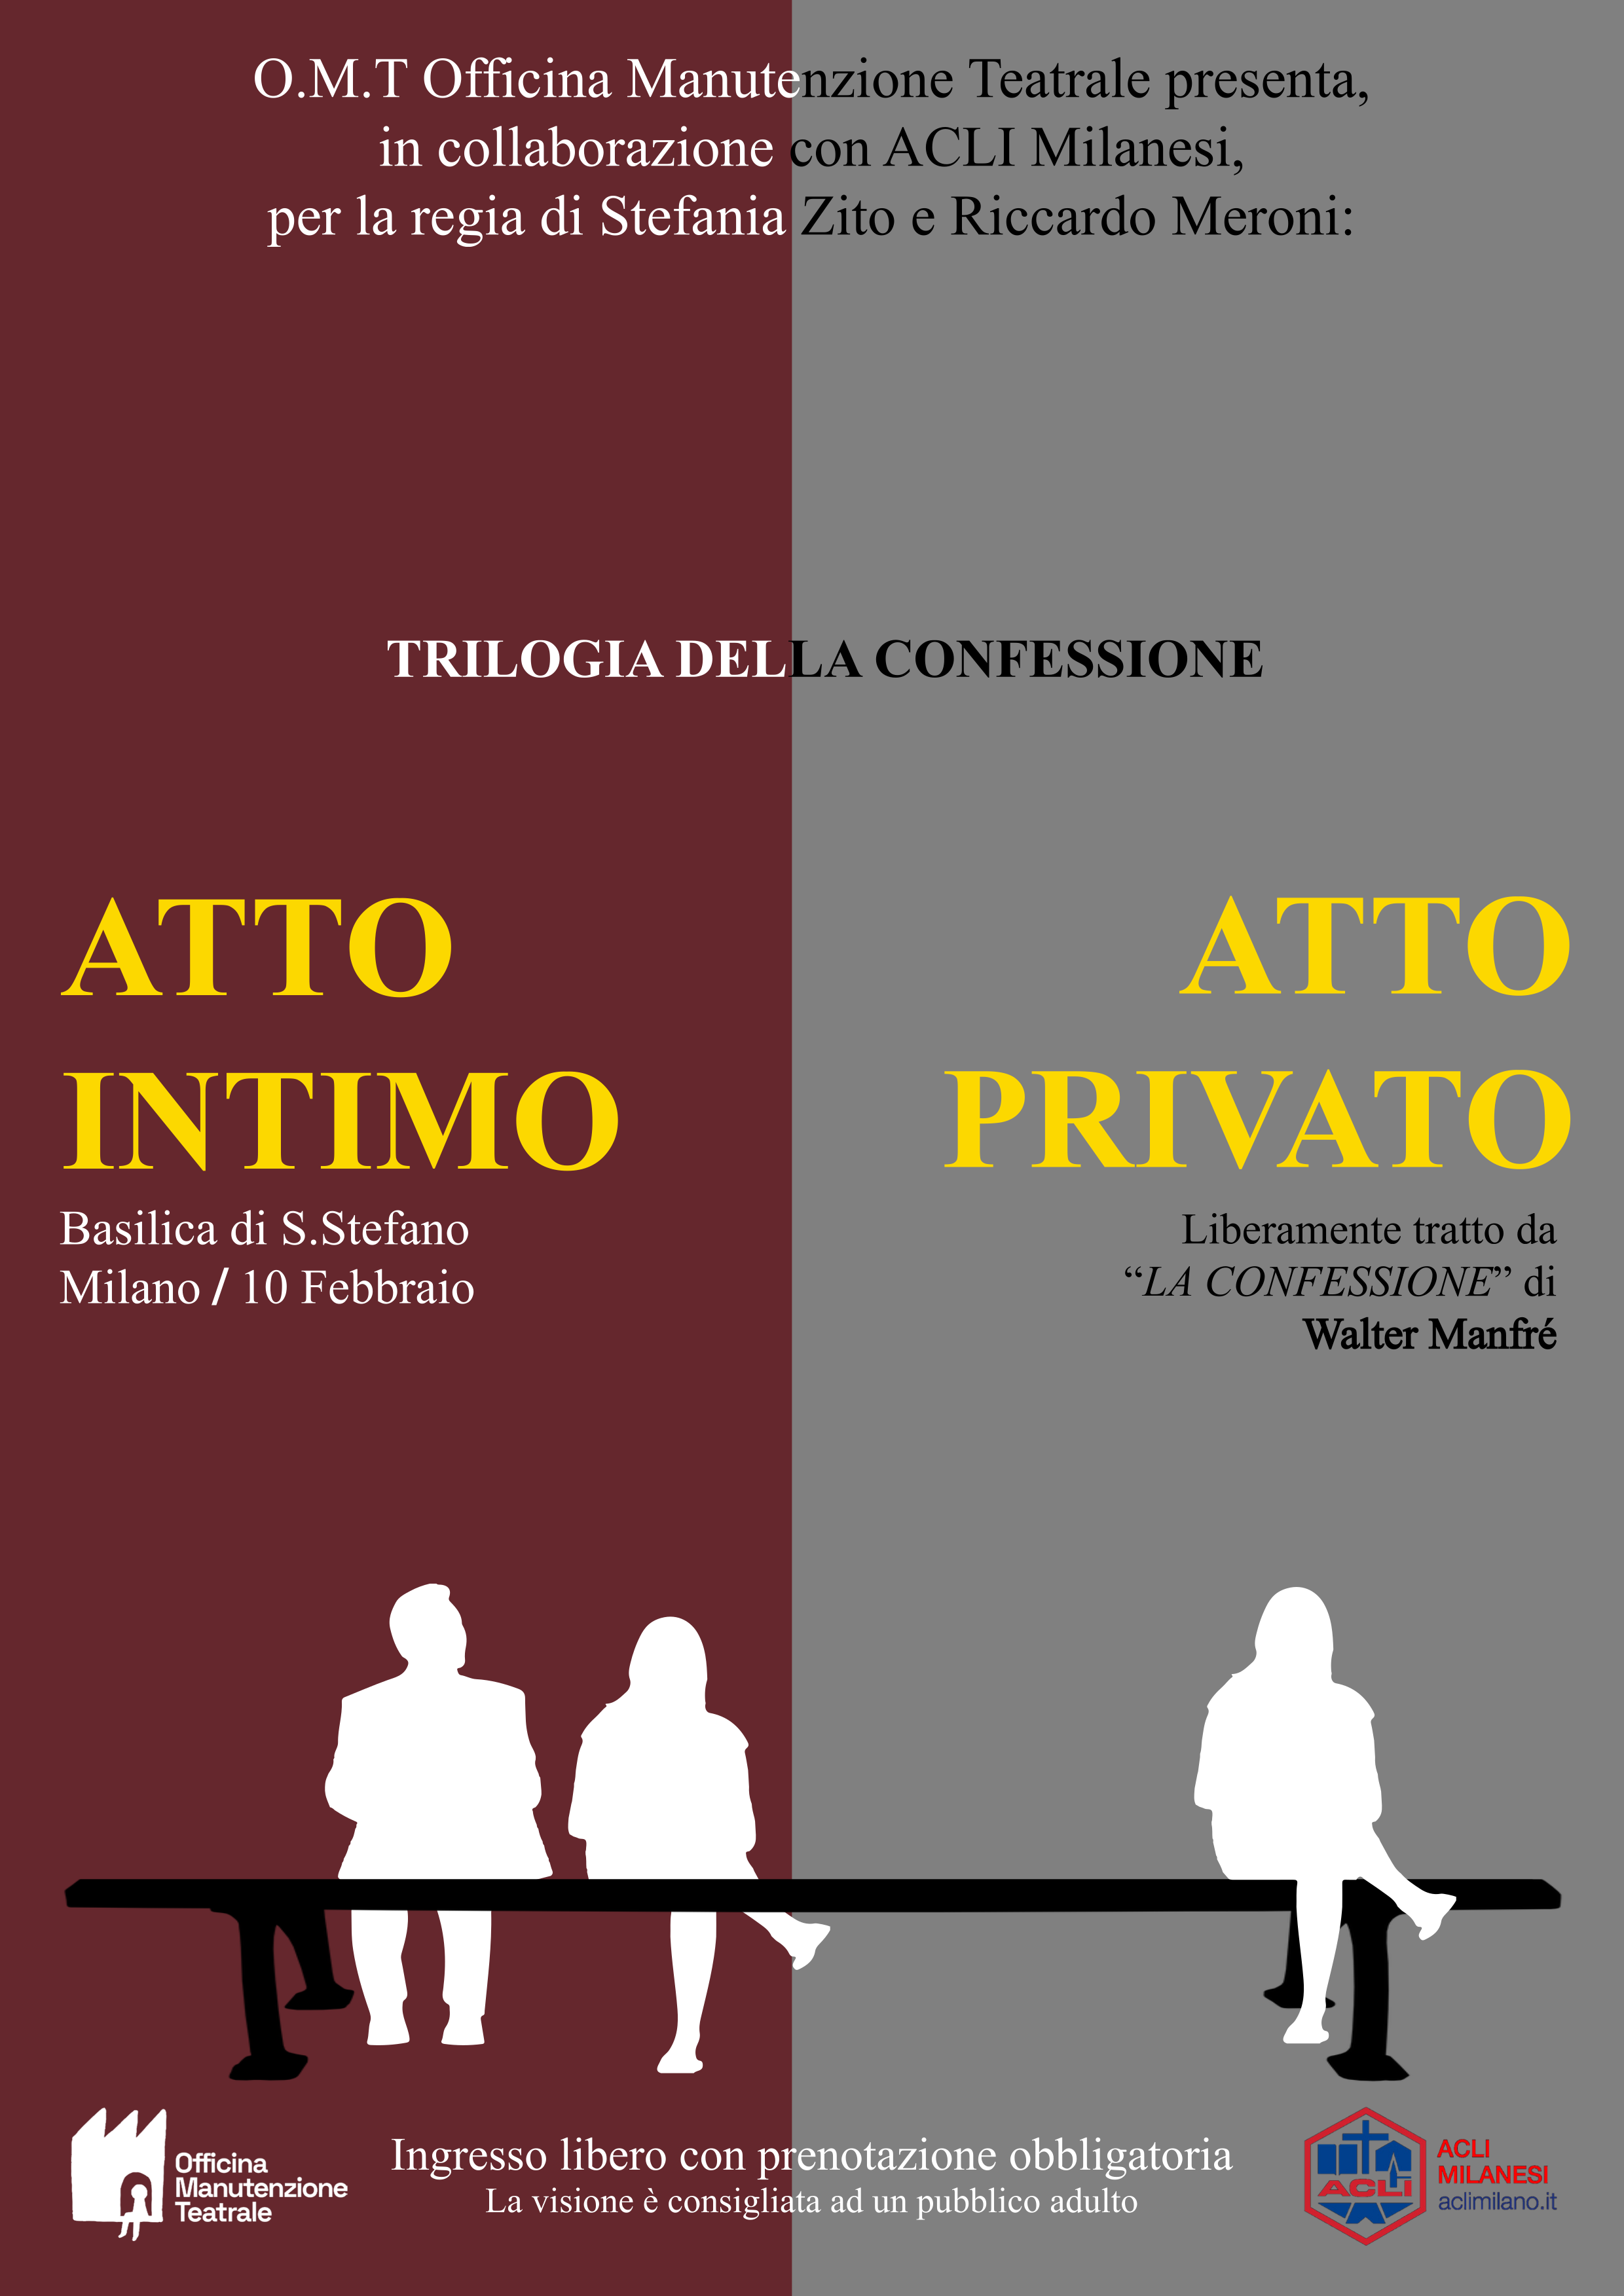 La Trilogia della Confessione